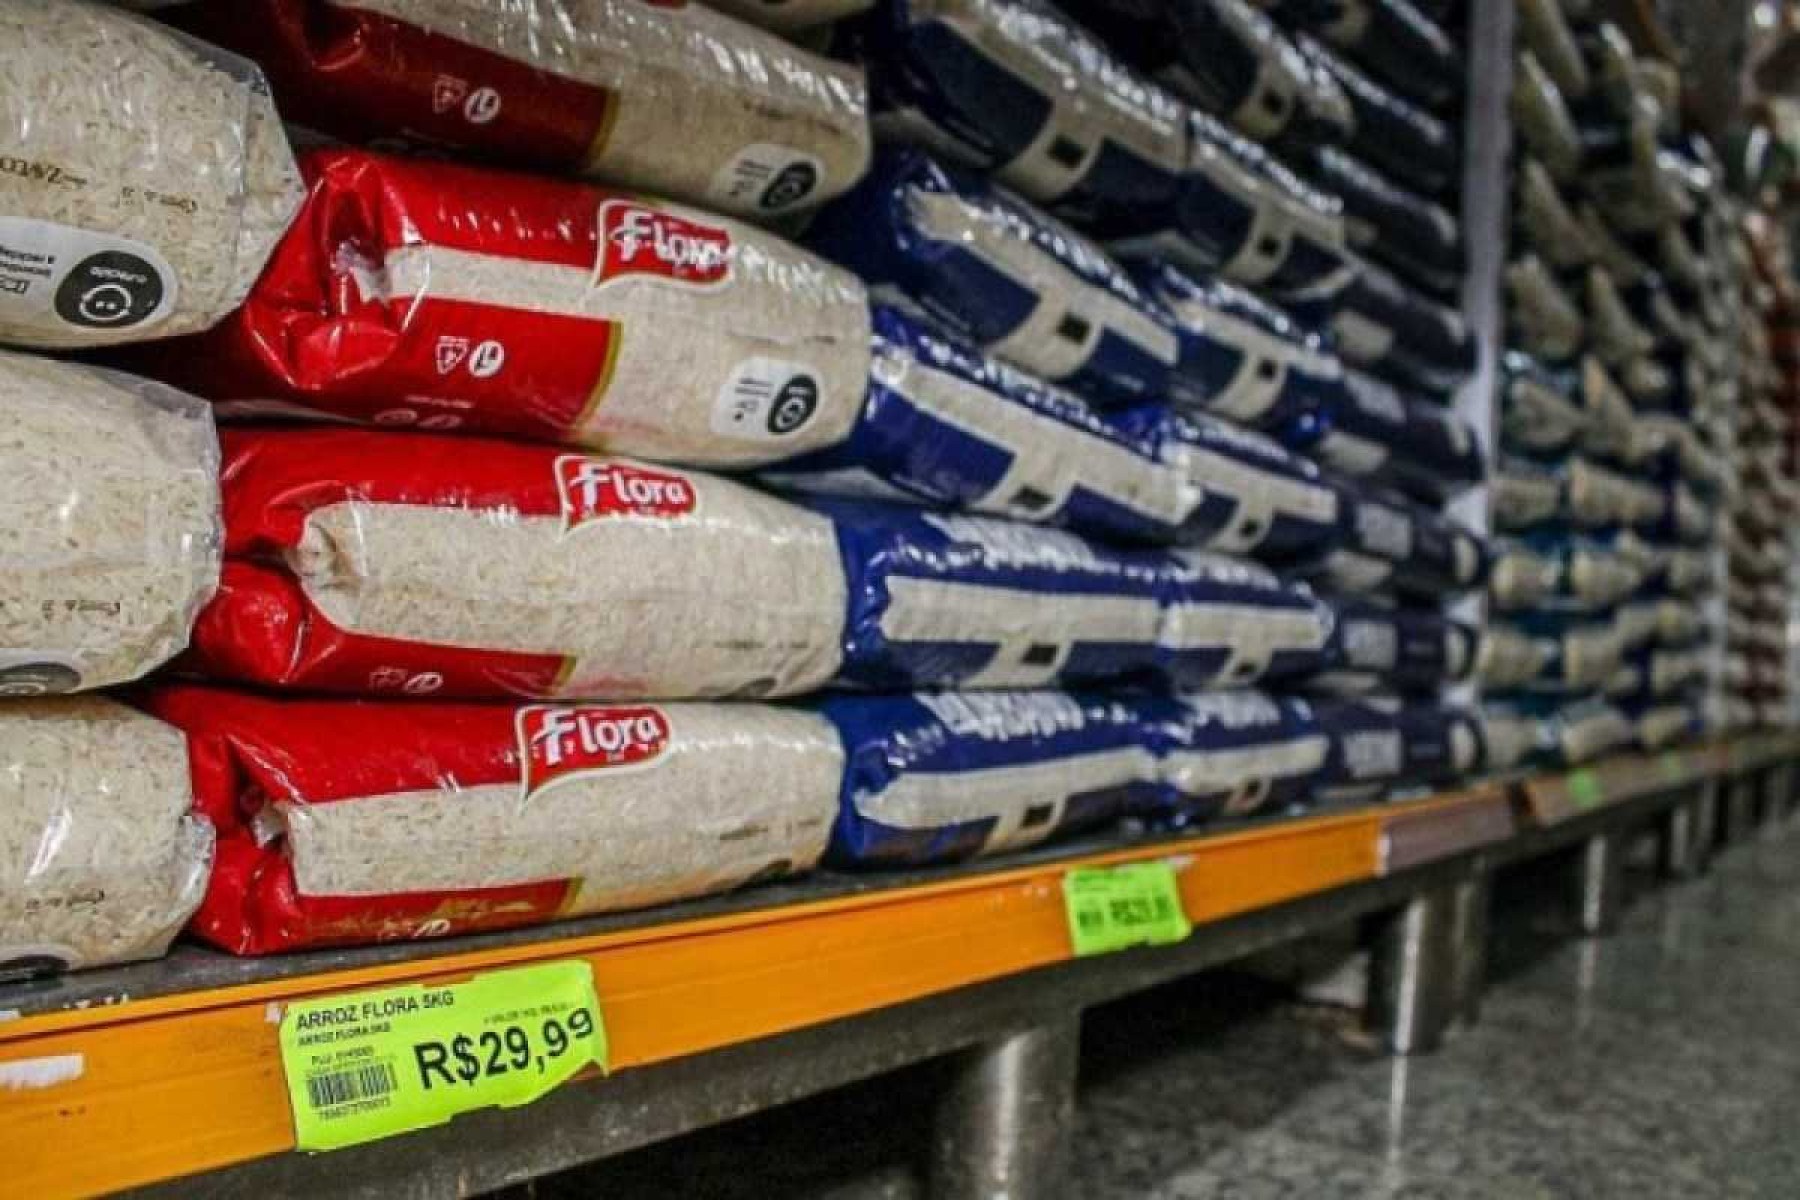 Leilão de arroz: PF vai abrir inquérito para investigar irregularidades